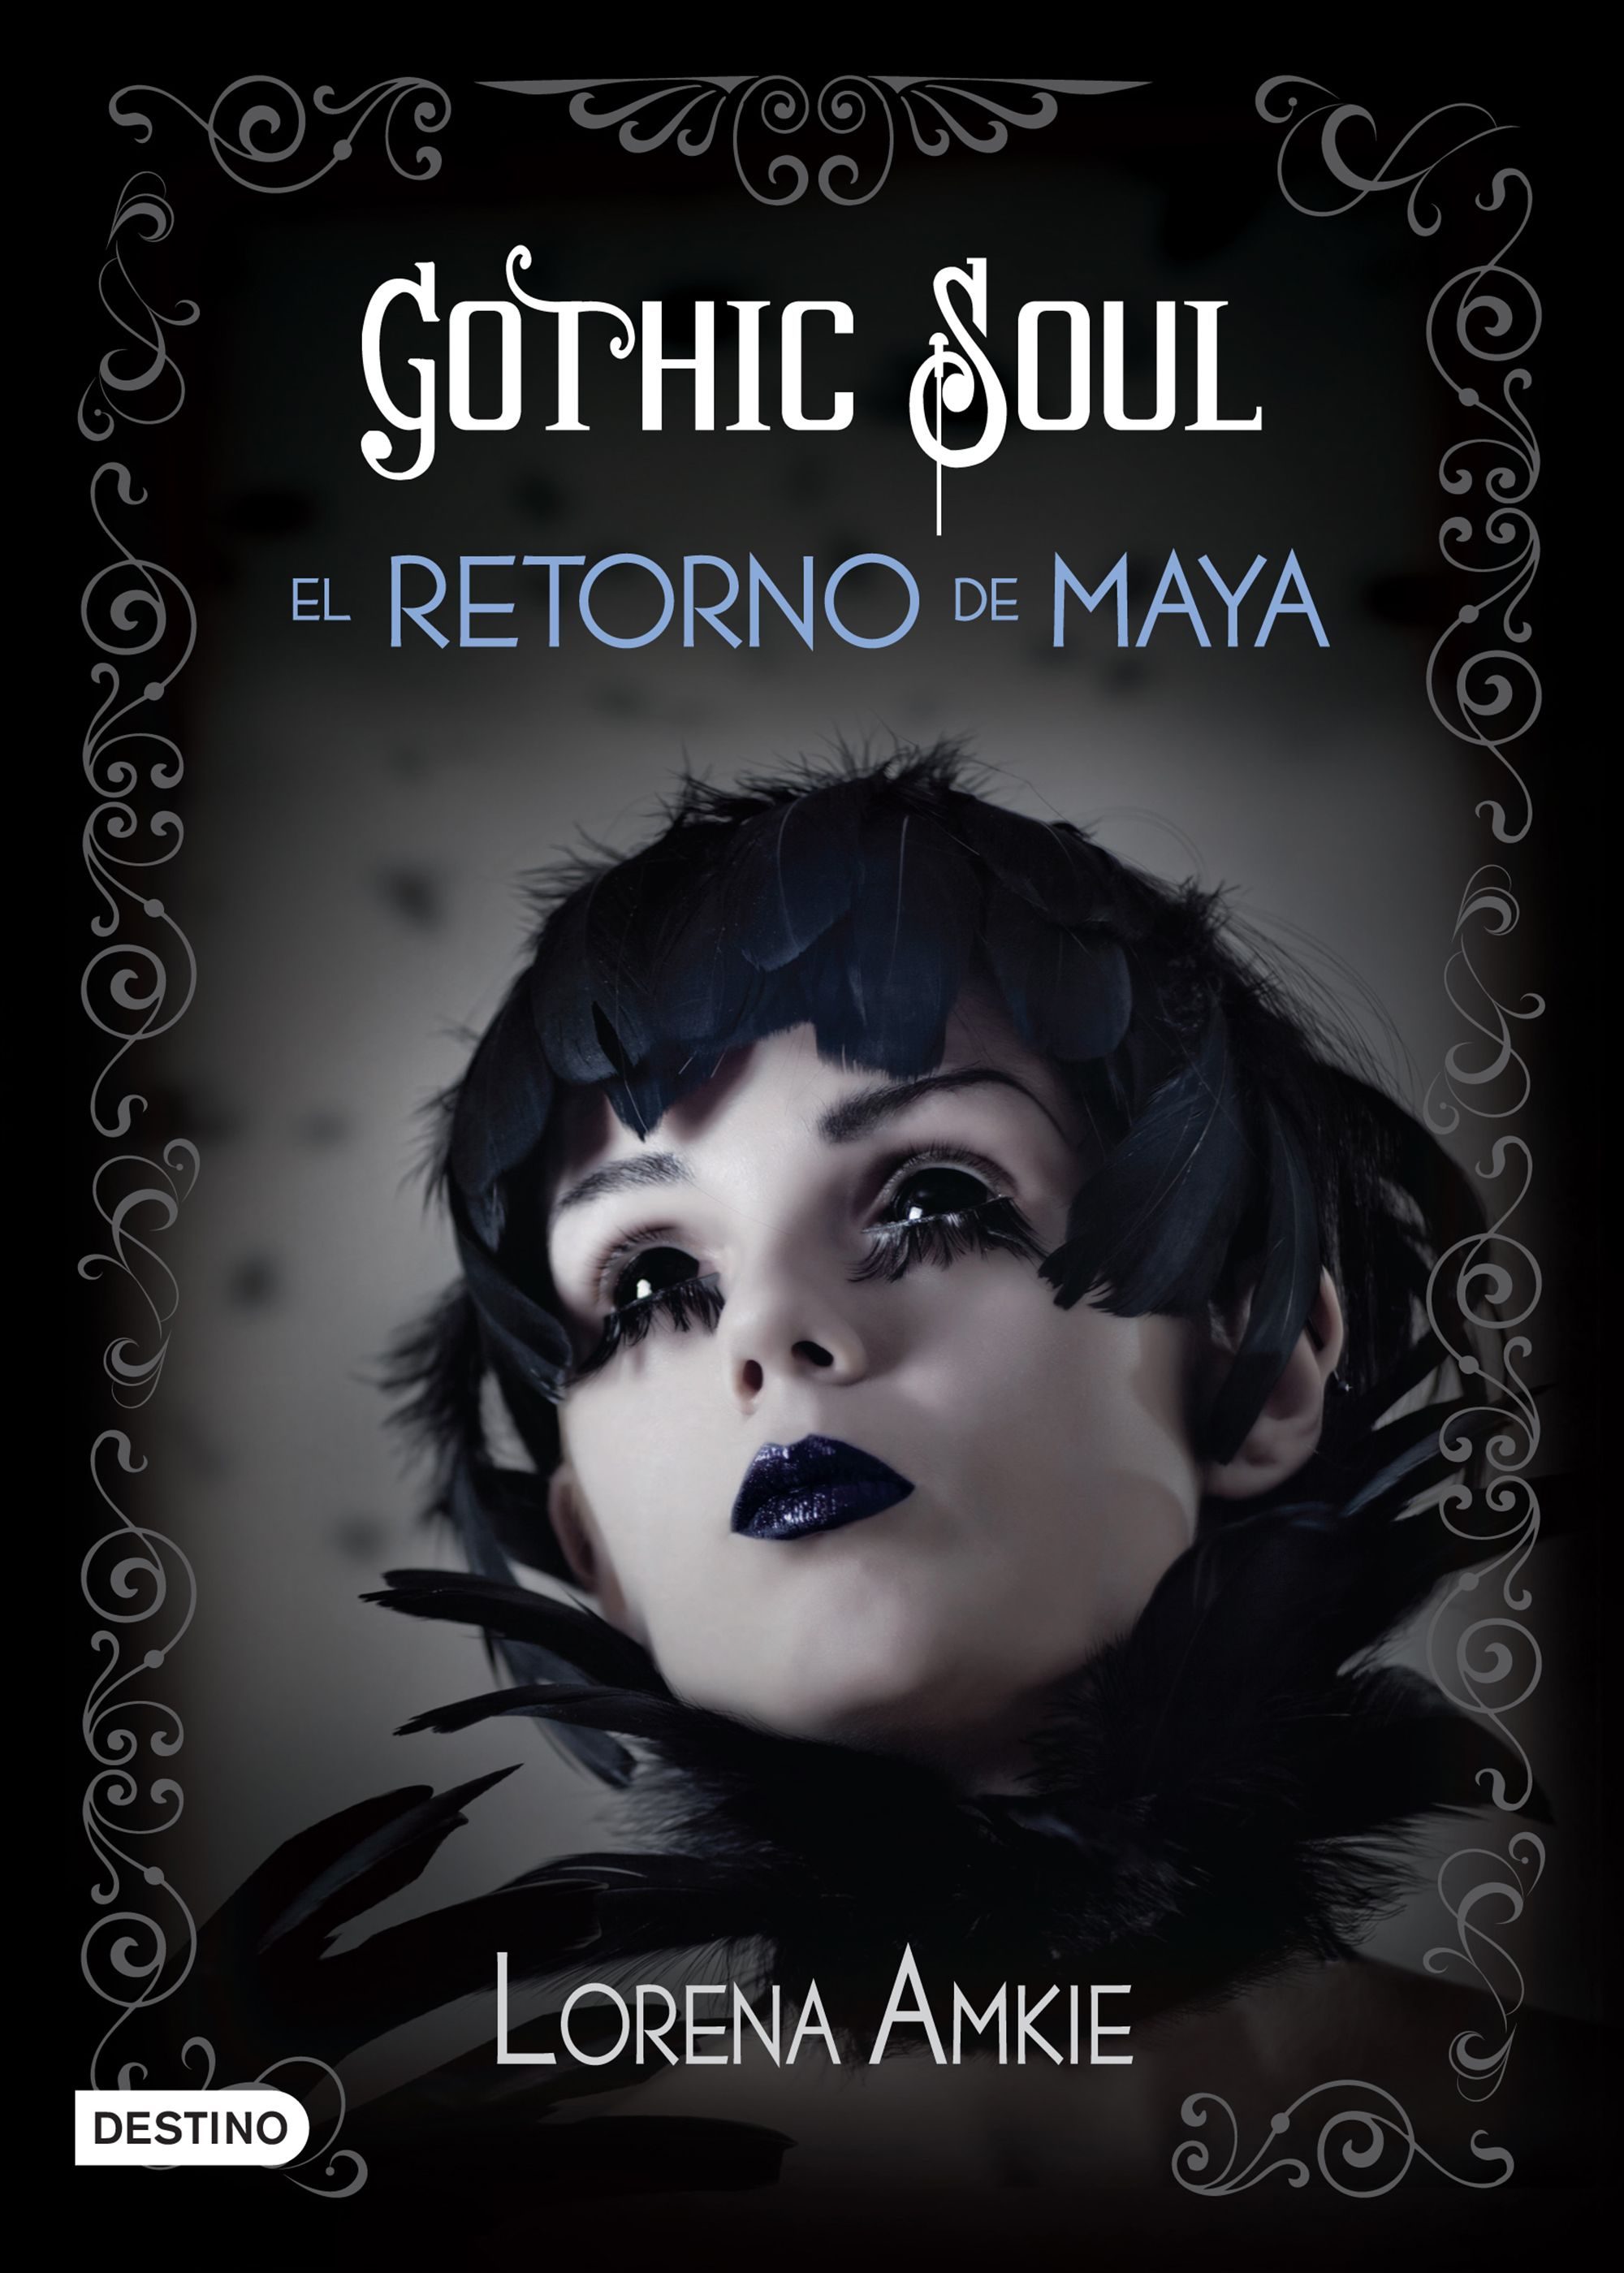 Resultado de imagen para gothic soul libro